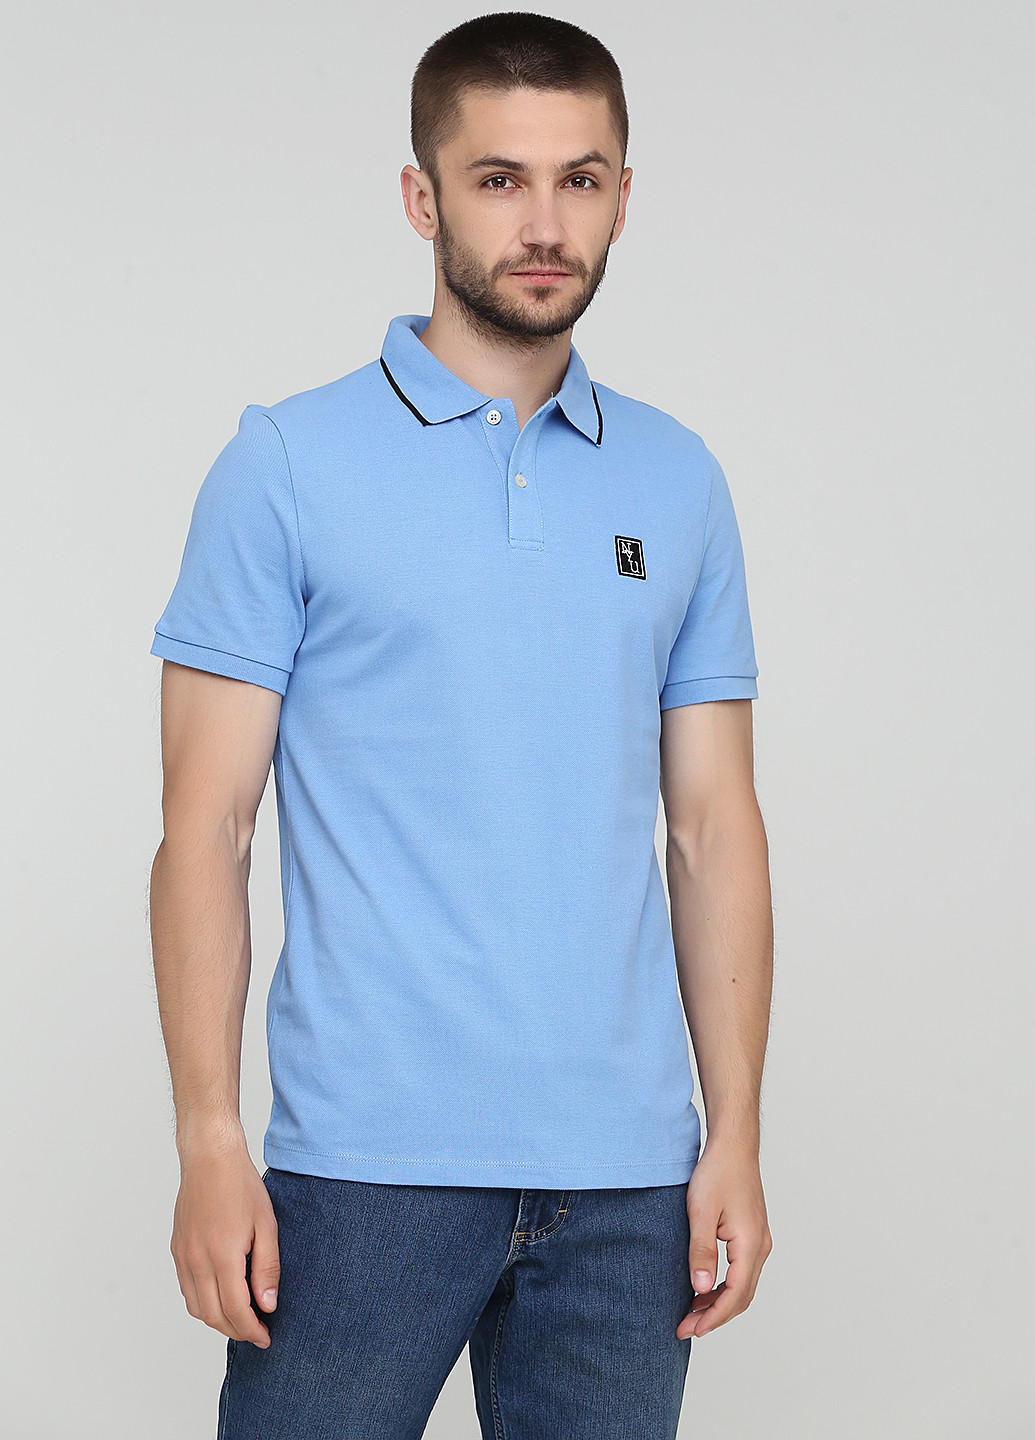 Темно-голубой футболка-поло для мужчин H&M однотонная